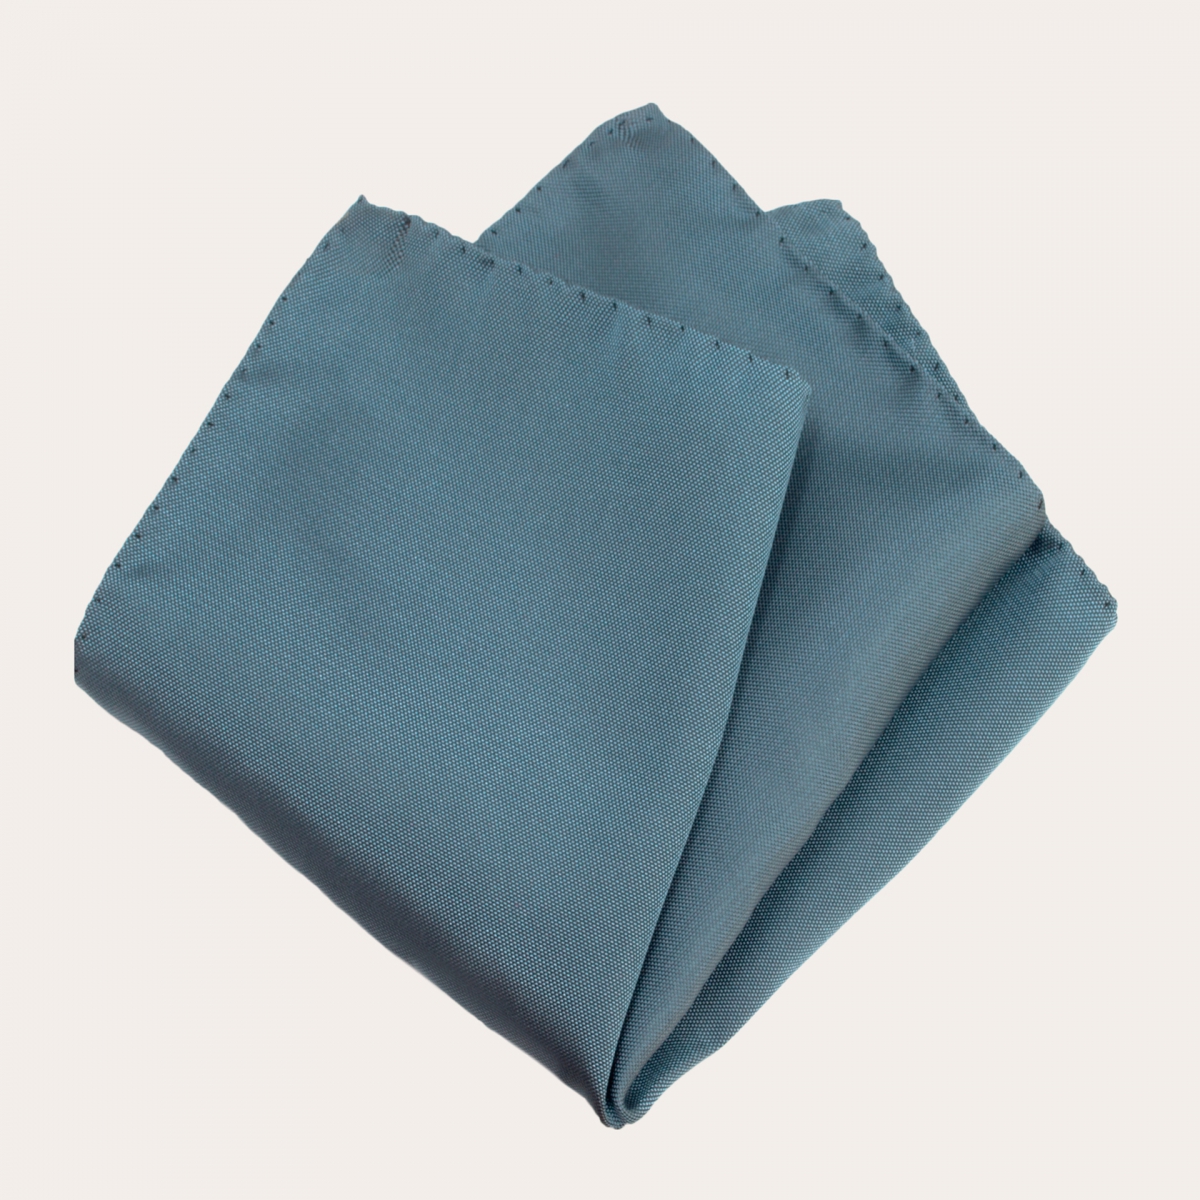 Conjunto de ceremonia azul empolvado, tirantes elásticos, pajarita de seda y pañuelo de bolsillo de seda